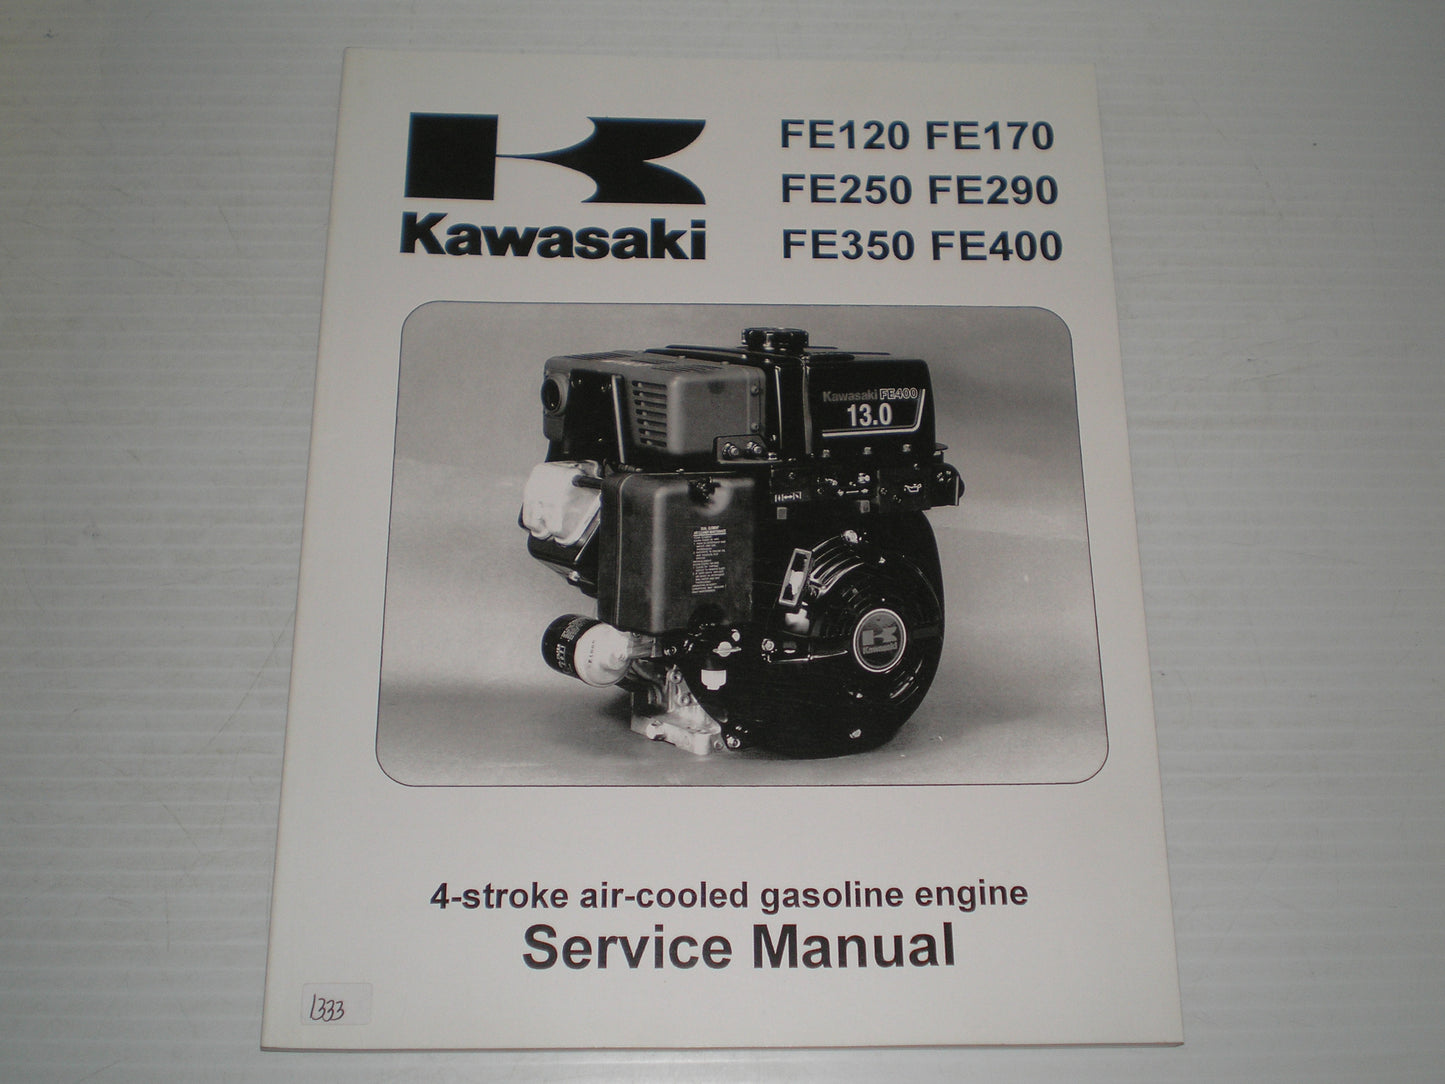 KAWASAKI FE120  FE170  FE250  FE290  FE350  FE400  Engine  2001  Service Manual   99924-2054-01  #1333